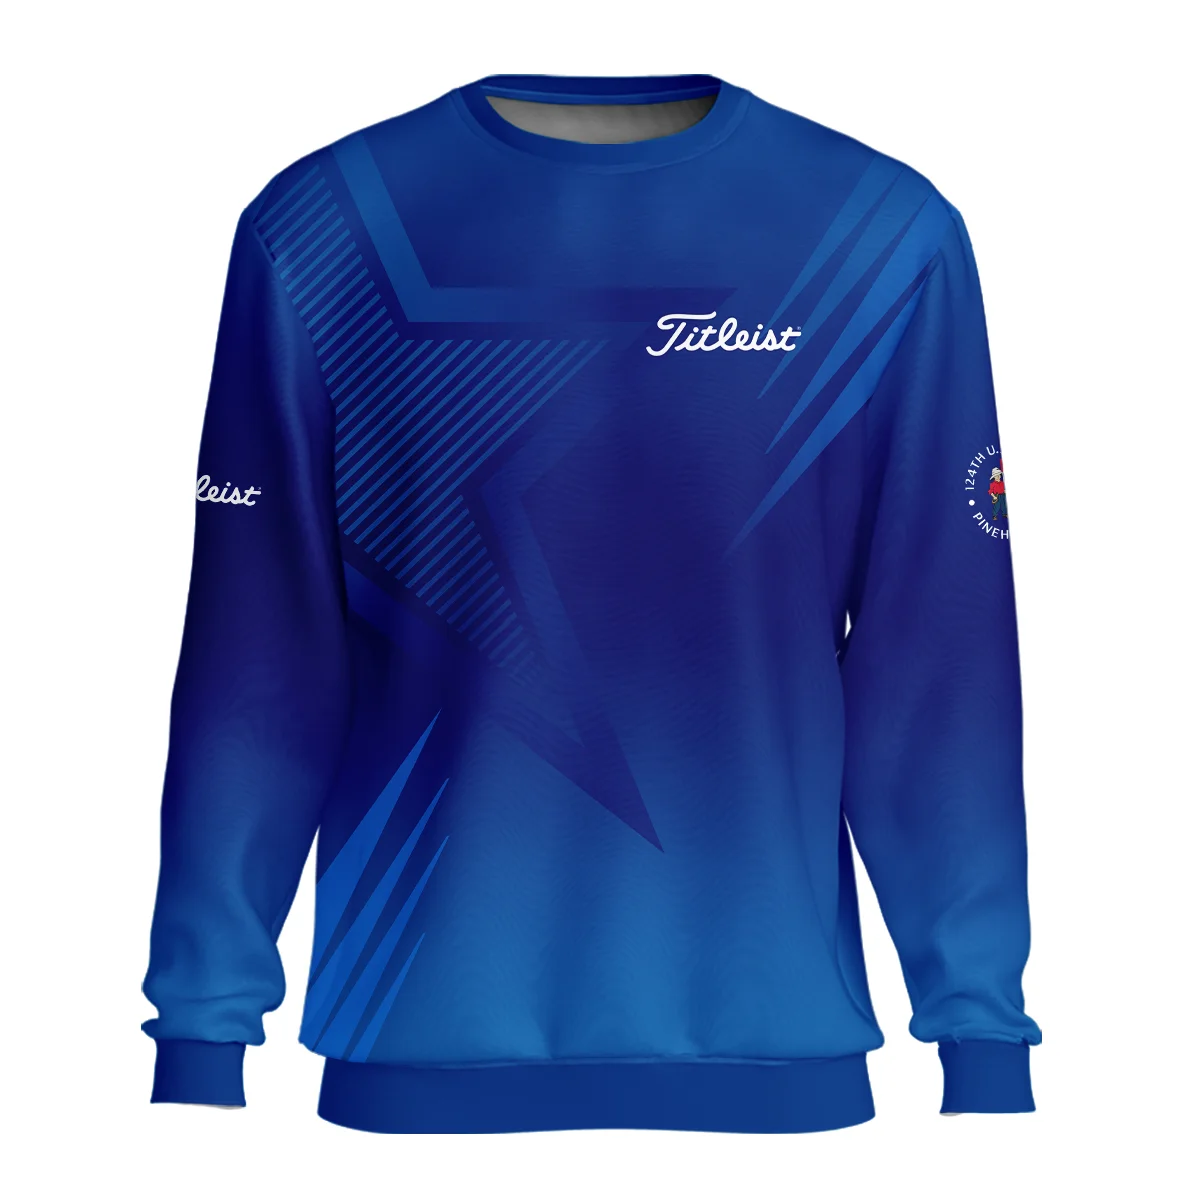 124th U.S. Open Pinehurst No.2 Titleist Unisex Sweatshirt Dark Blue Gradient Star Pattern Sweatshirt